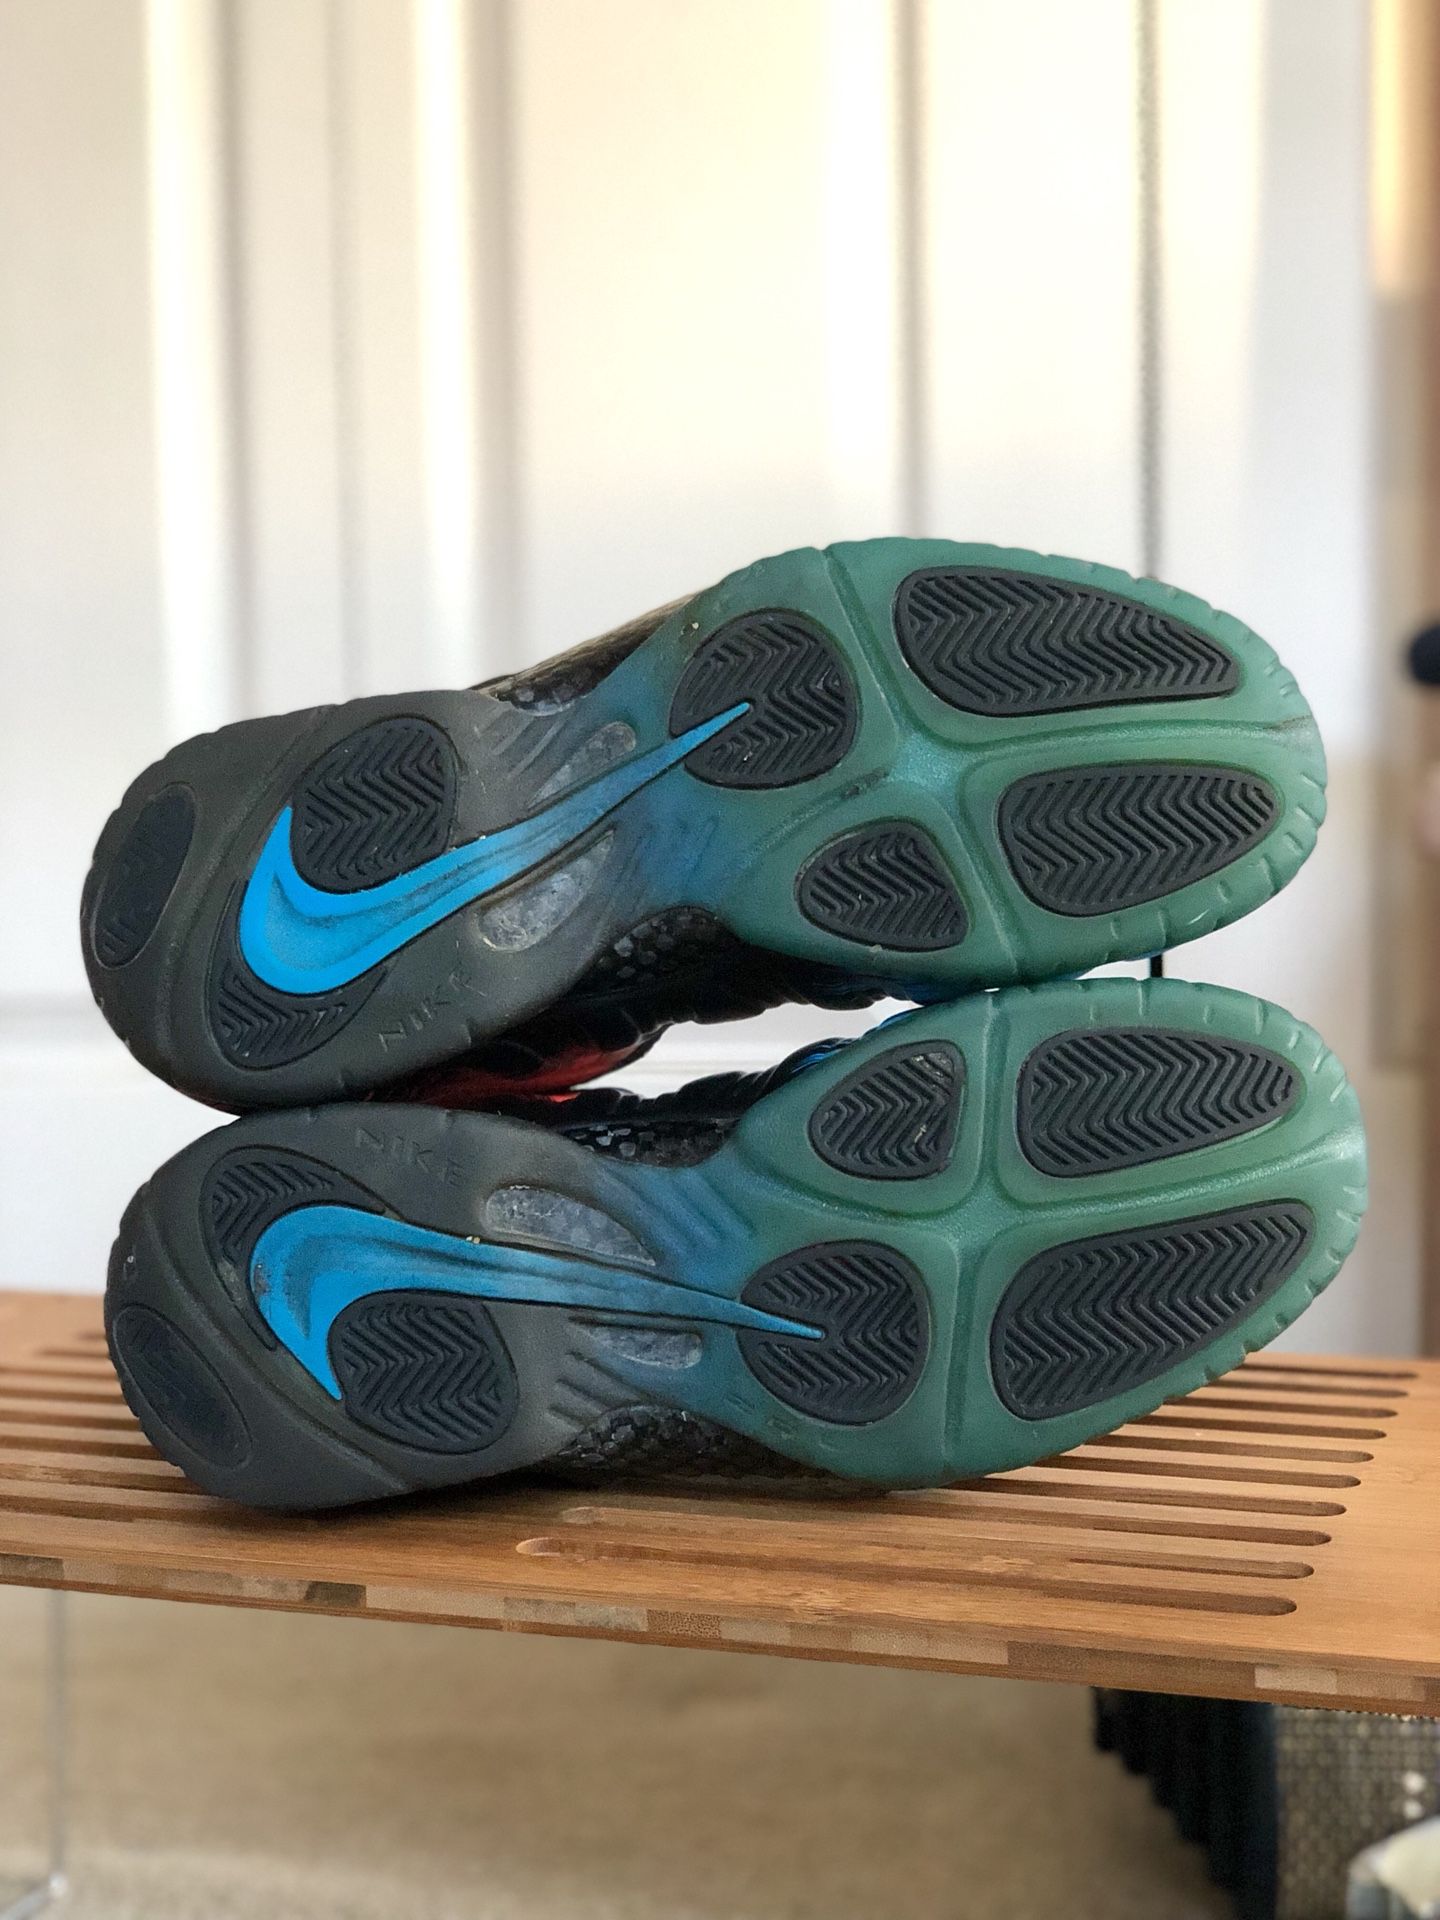 Nike Air Foamposite Pro Spider-Man Shoes - Size 13 - Vivid Blue / Black-Light Crimson